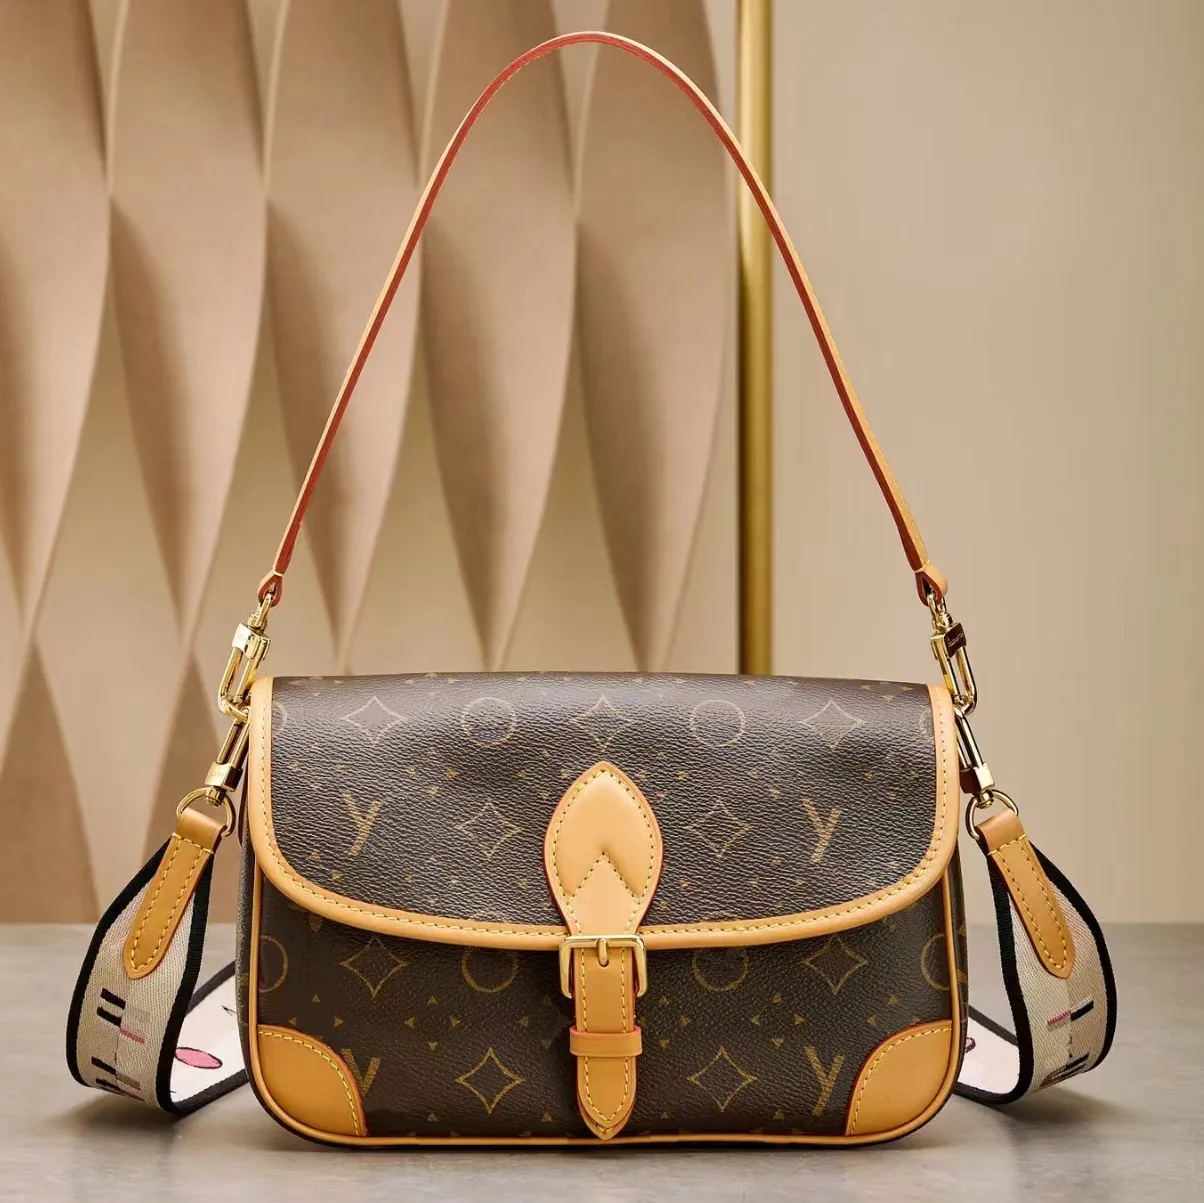 Designer Bag shoulder bag Handbag Leather luxury vintage Diane Baguette handbag fashionable leather shoulder bag 02